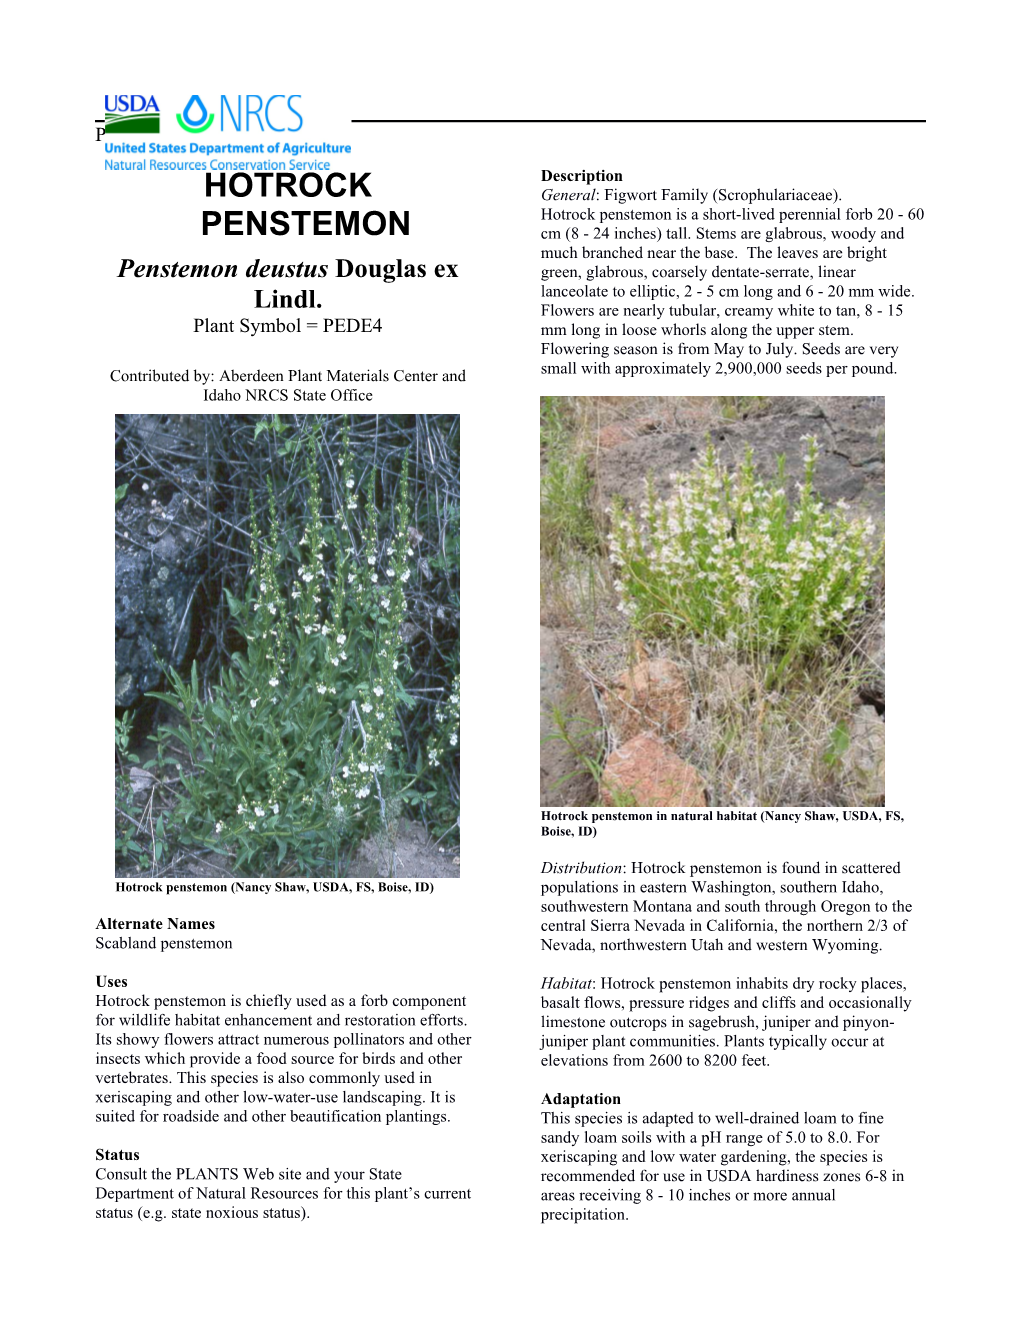 Hotrock Penstemon Plant Guide